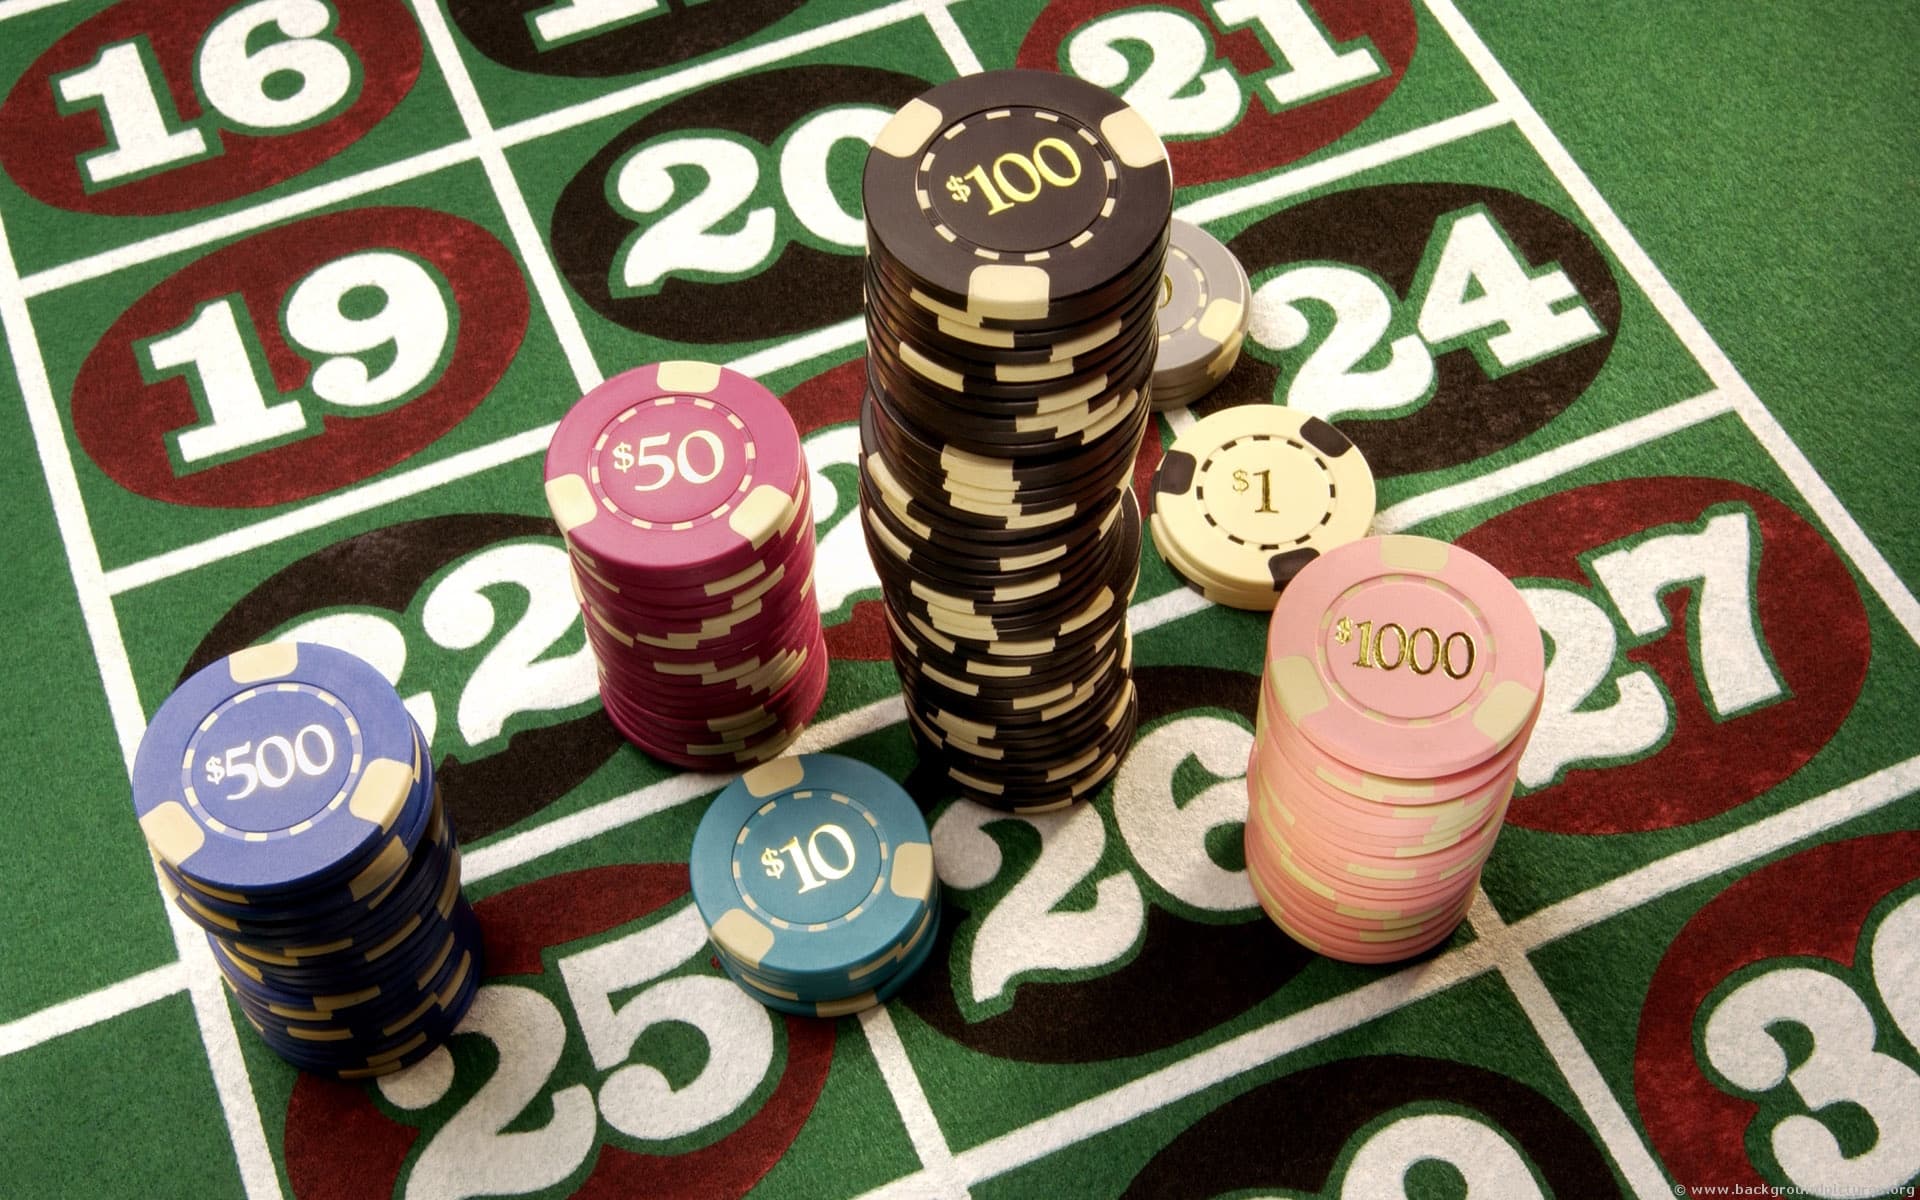 Casino Games online, free Spins